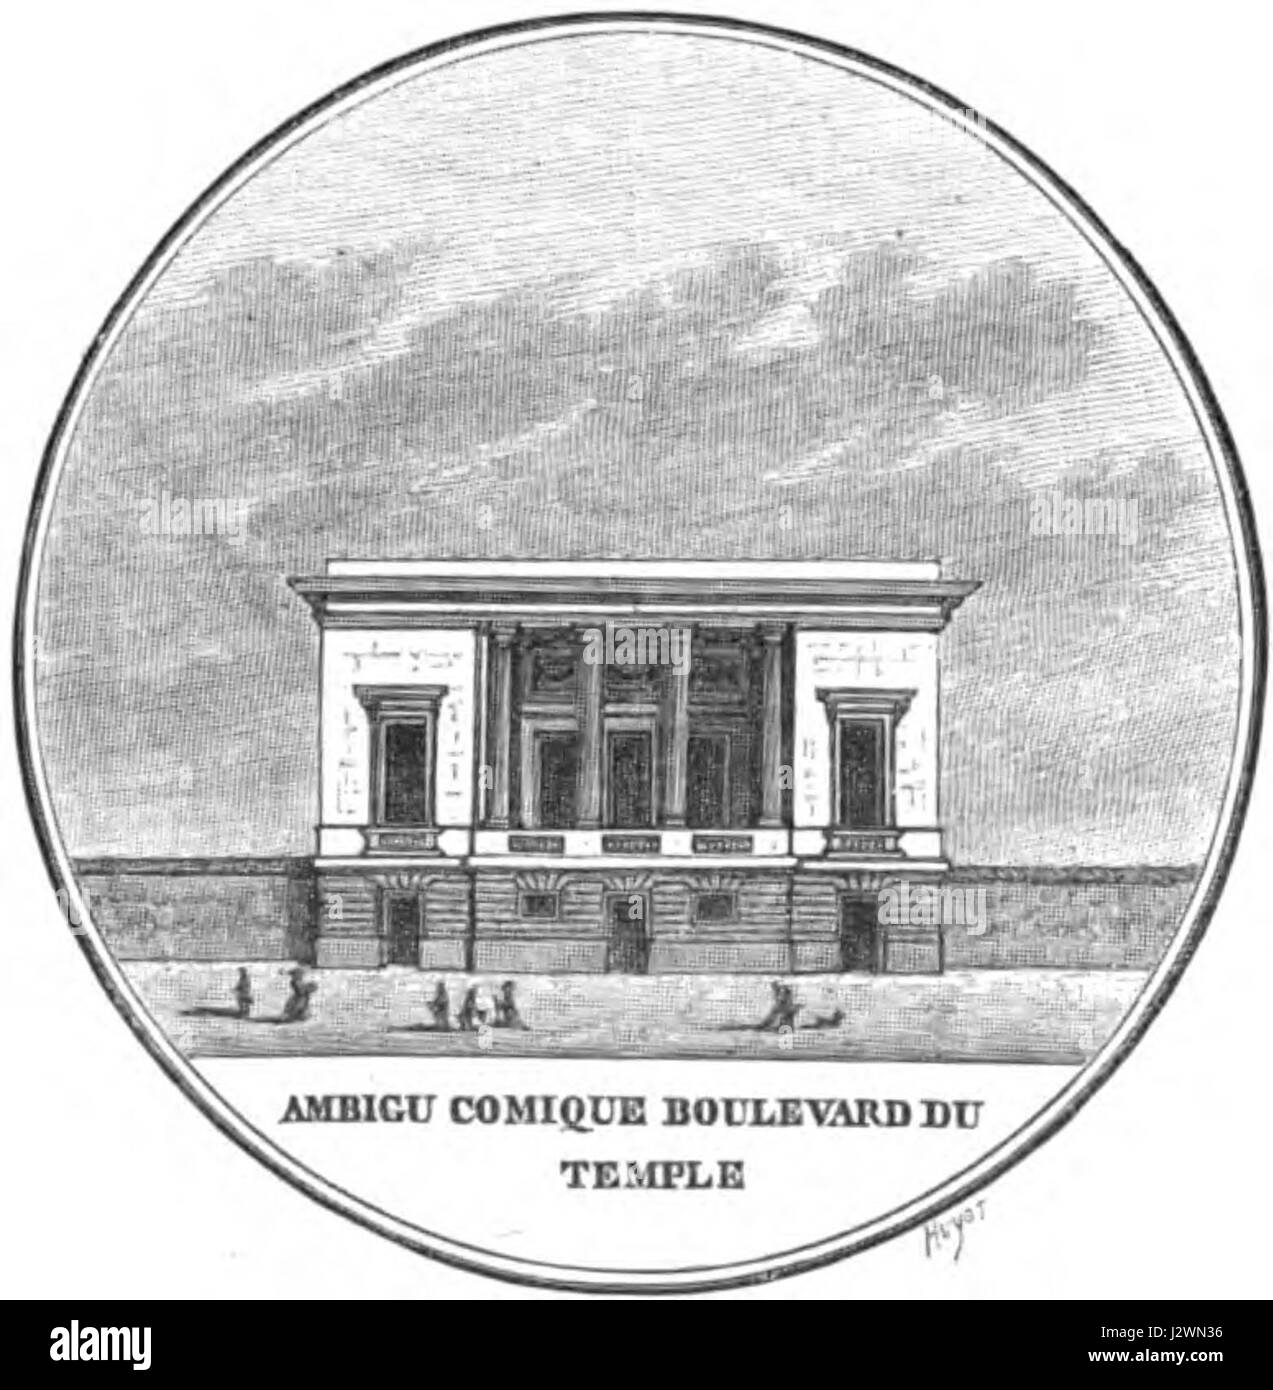 Ambigu-Comique (boulevard du Temple) - Pougin 1885 p114 Stock Photo